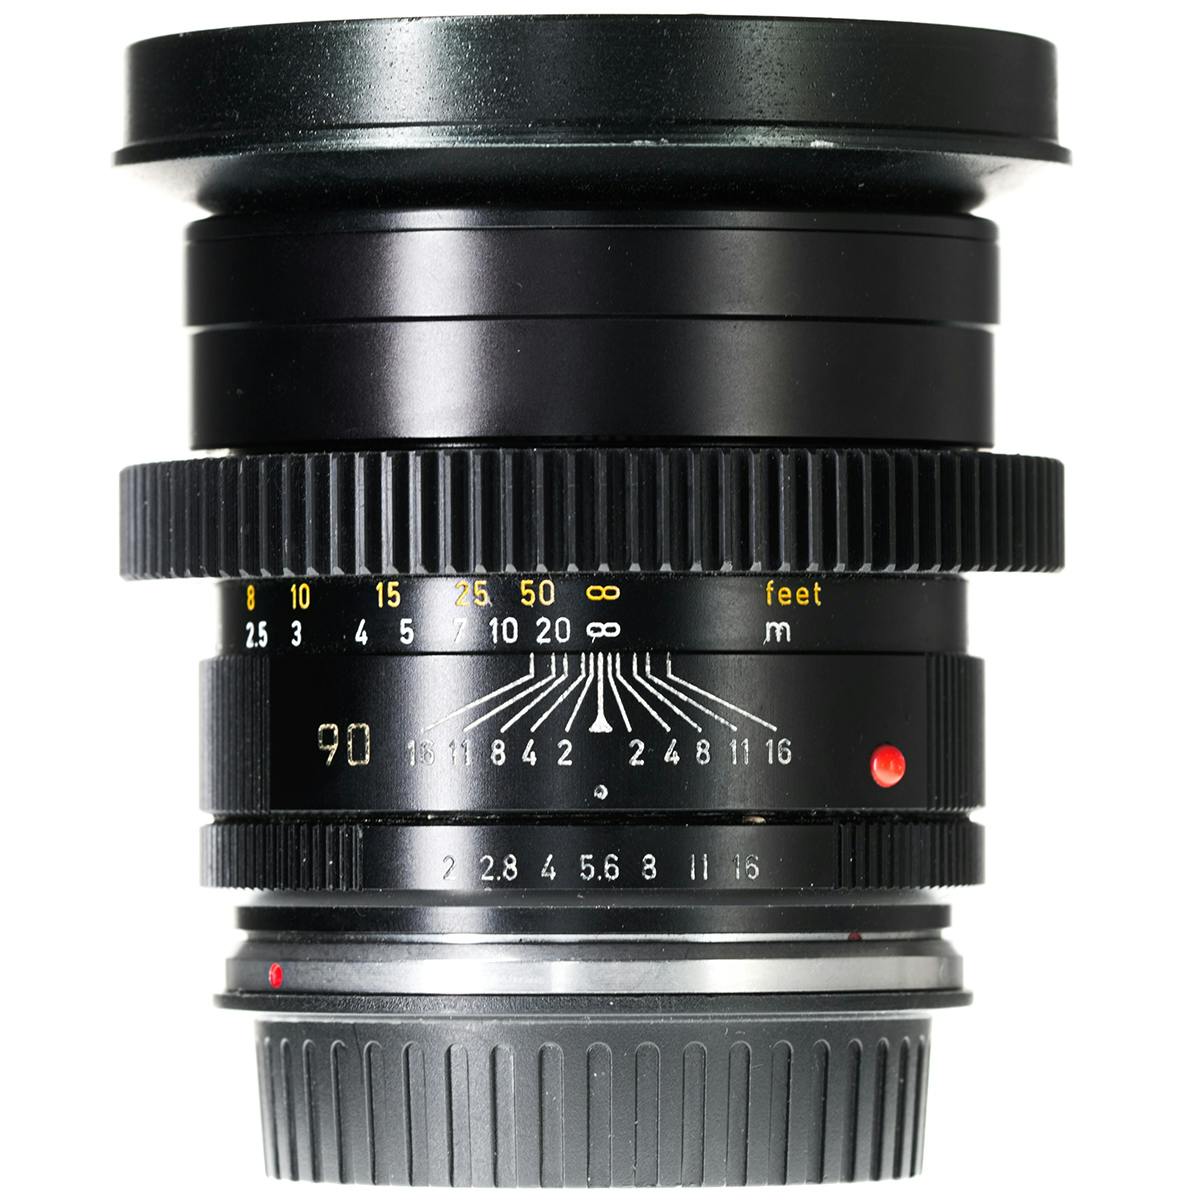 Leica Summicron-R 90mm f2